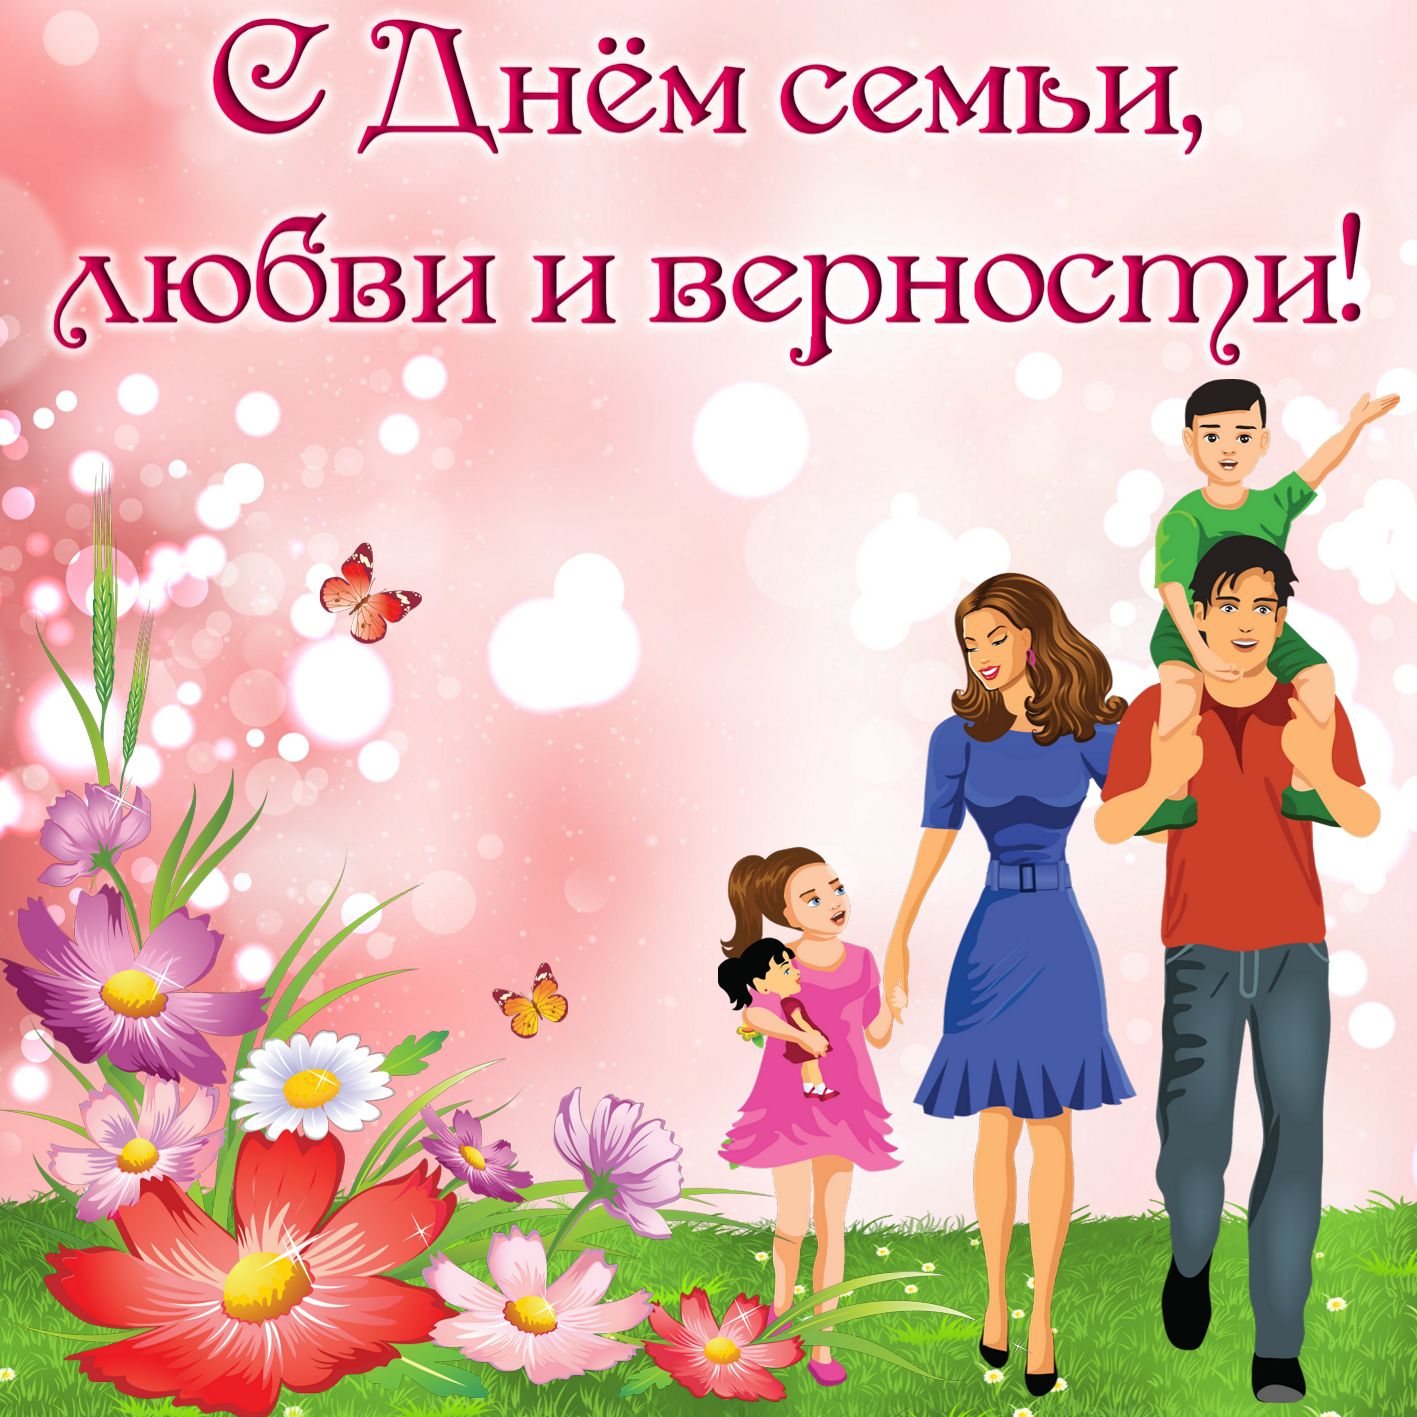 Международный праздник день семьи , открытка с днём семьи , семья . Открытка , картинка с праздником международный день семьи , день любви и верности , на открытке семья , любящая семья , любовь друг к другу , открытка ка дню семьи .